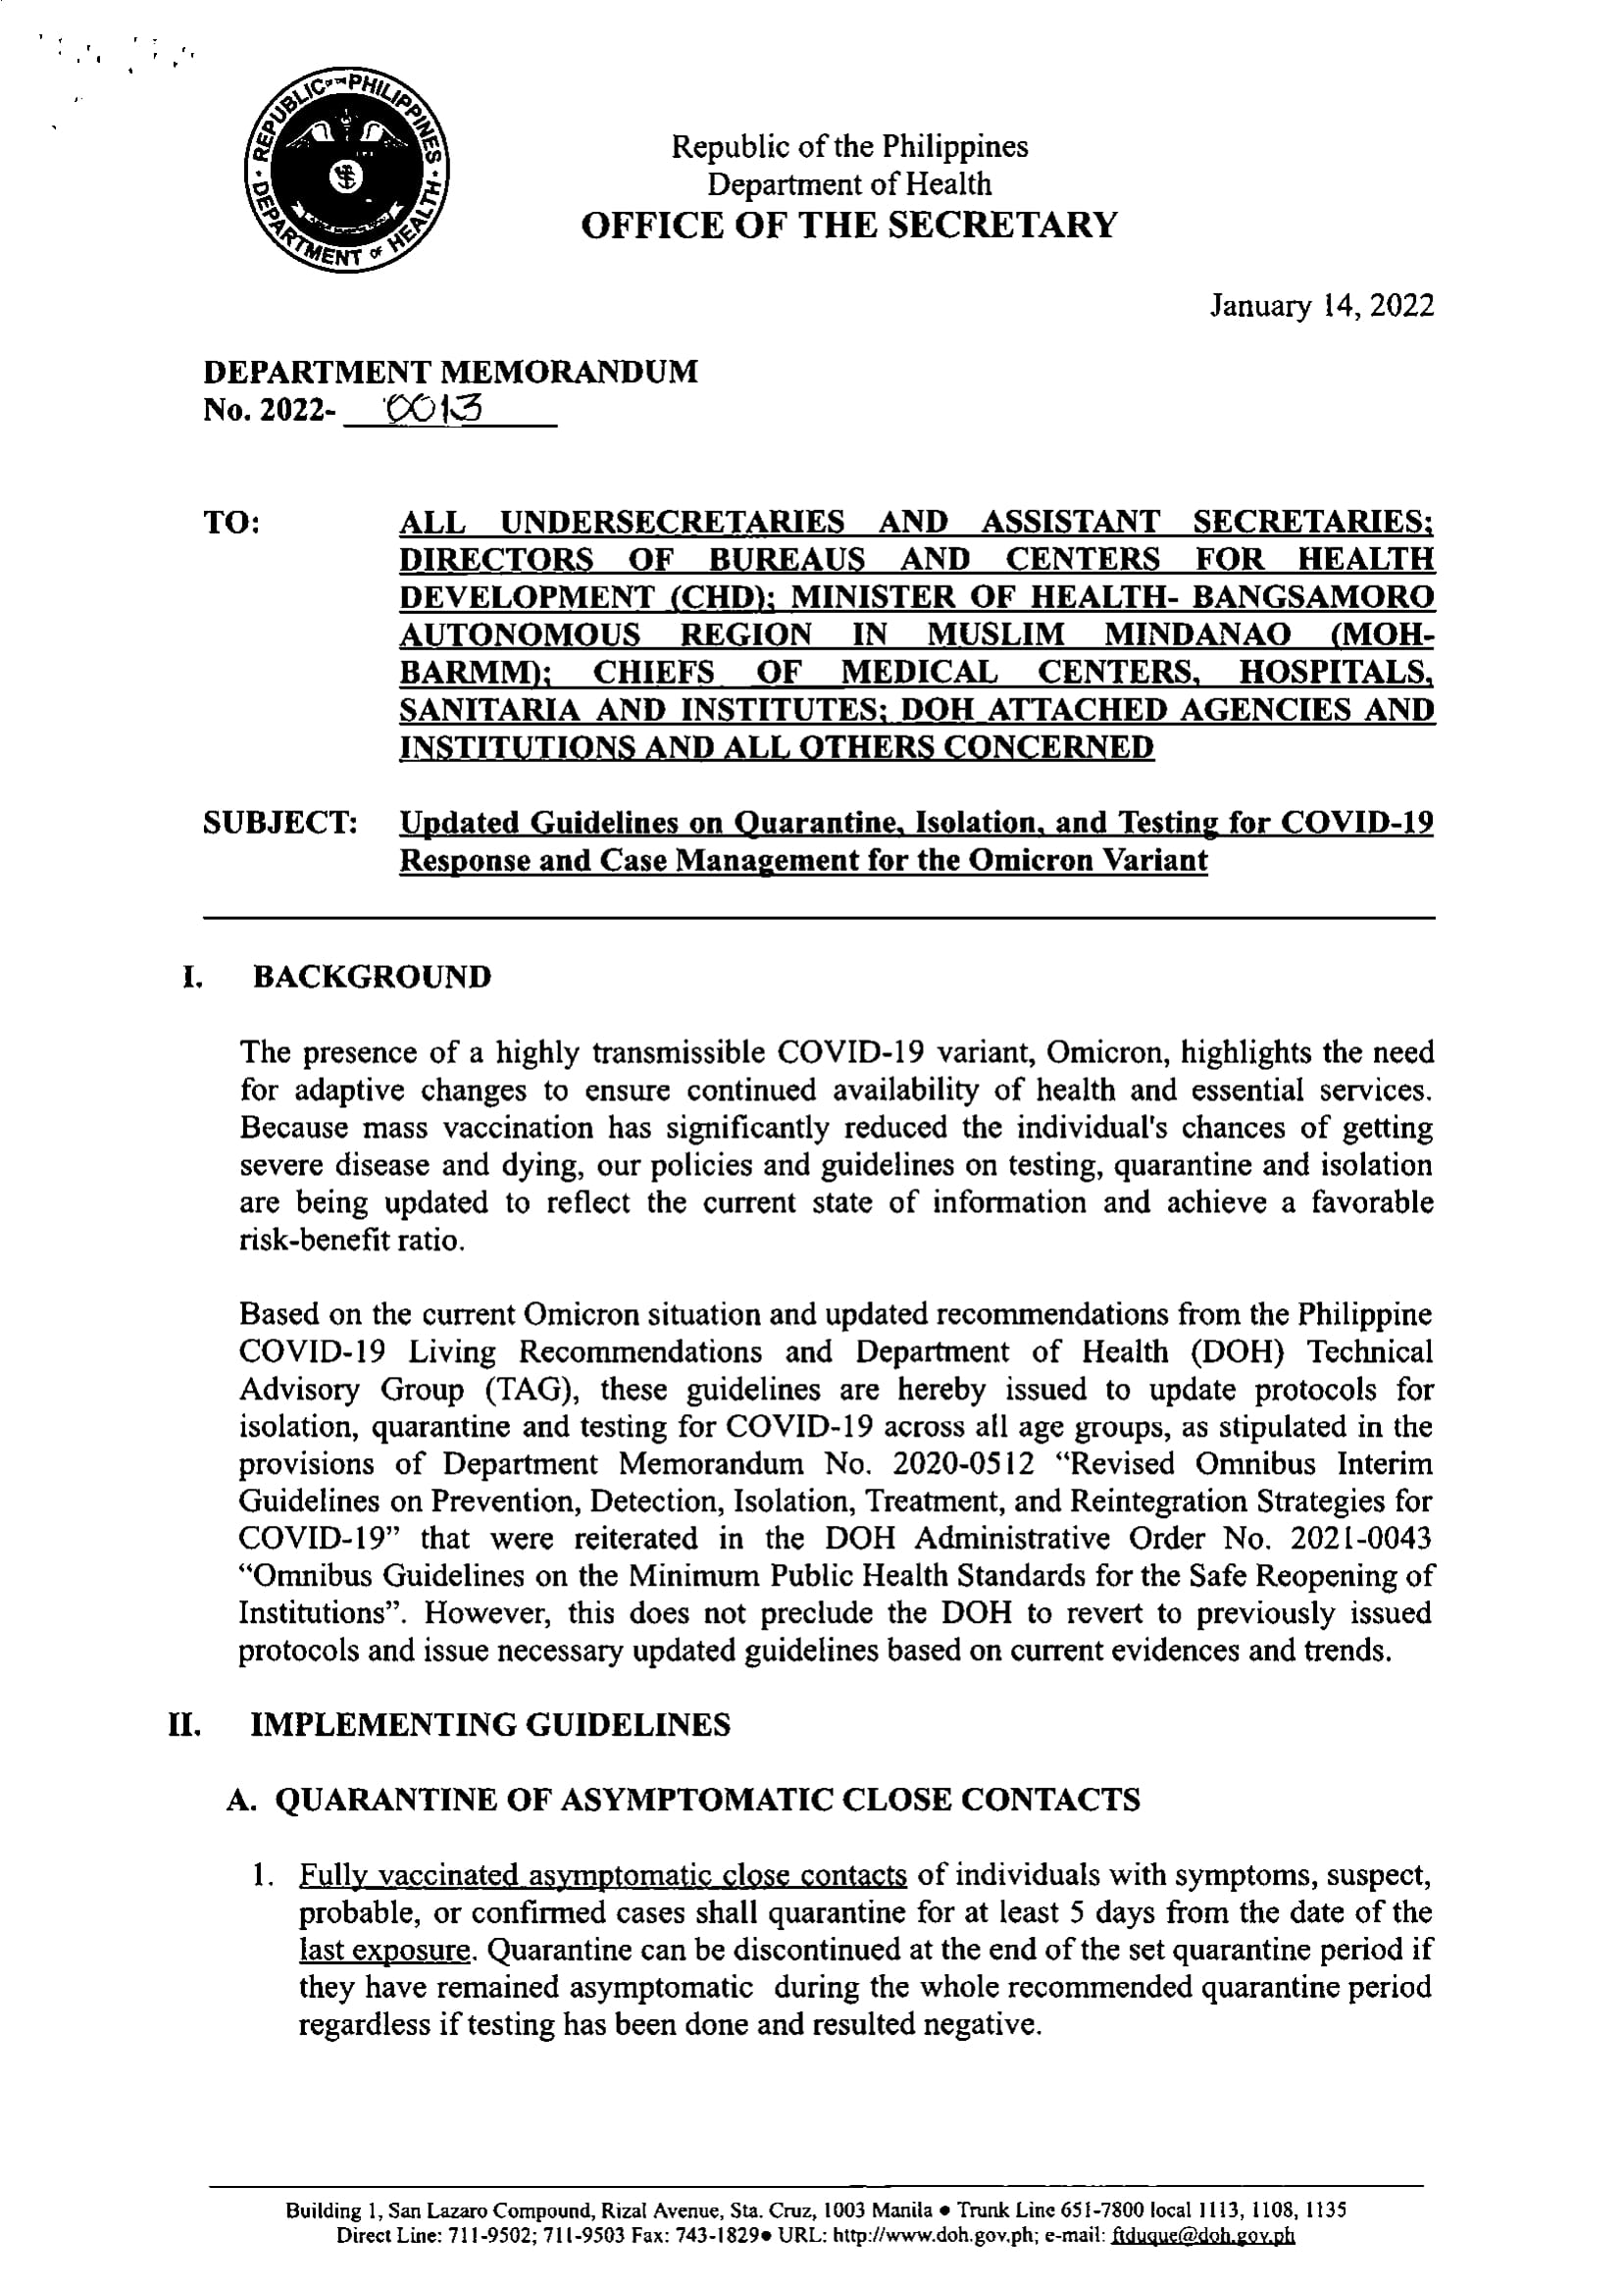 DOH Department Memorandum 2022 0013 Updated Guidelines on Quarantine